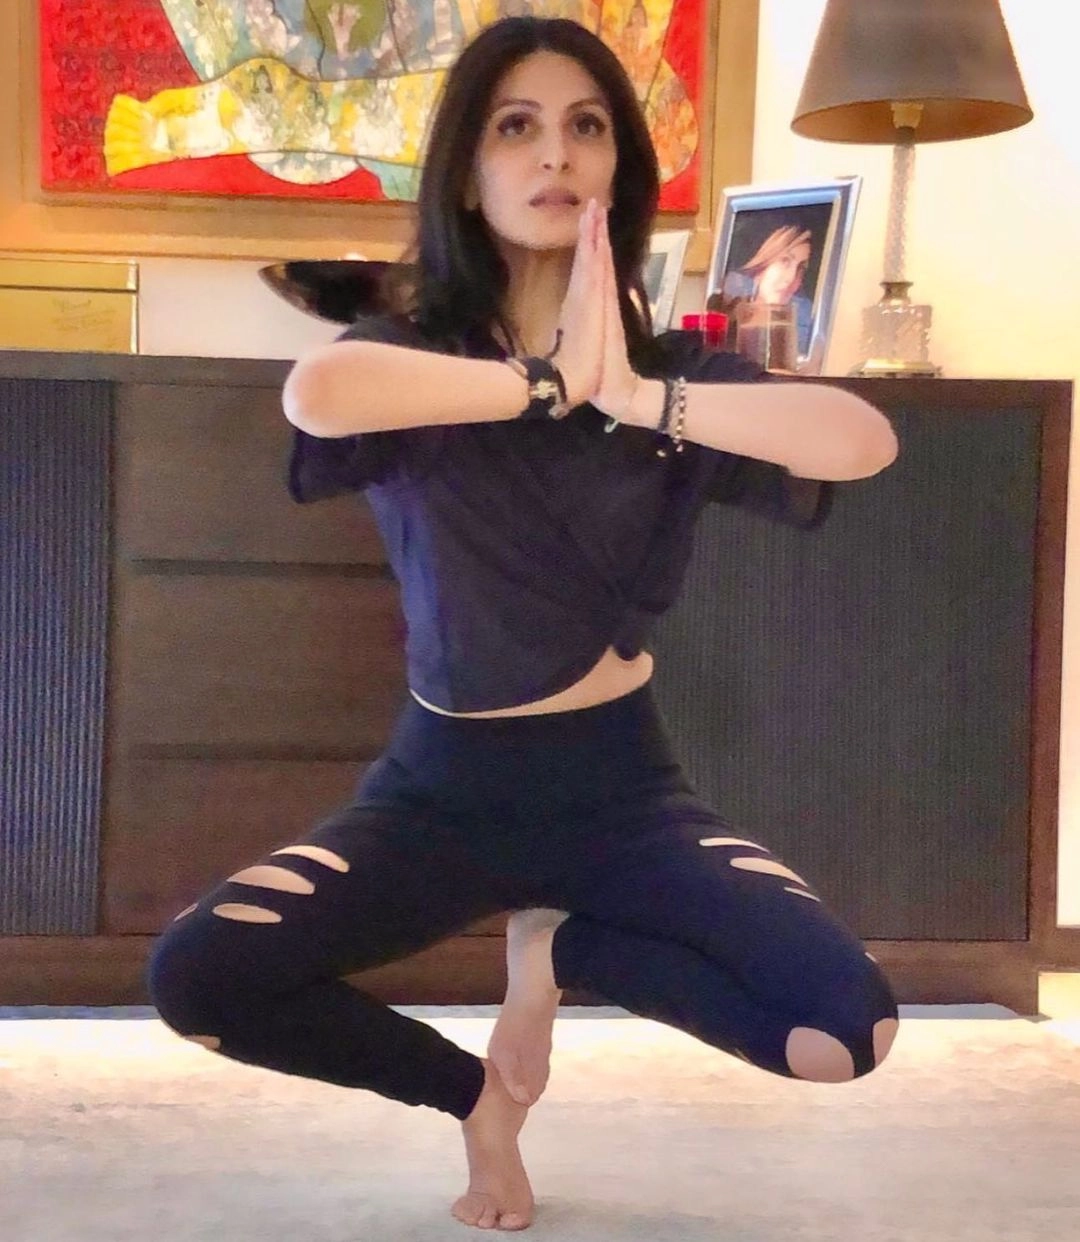 International Yoga Day: रणबीर कपूर की बहन रिद्धिमा ने किया बेहद मुश्किल योगासन, मां नीतू और बेटी भी दिखीं साथ